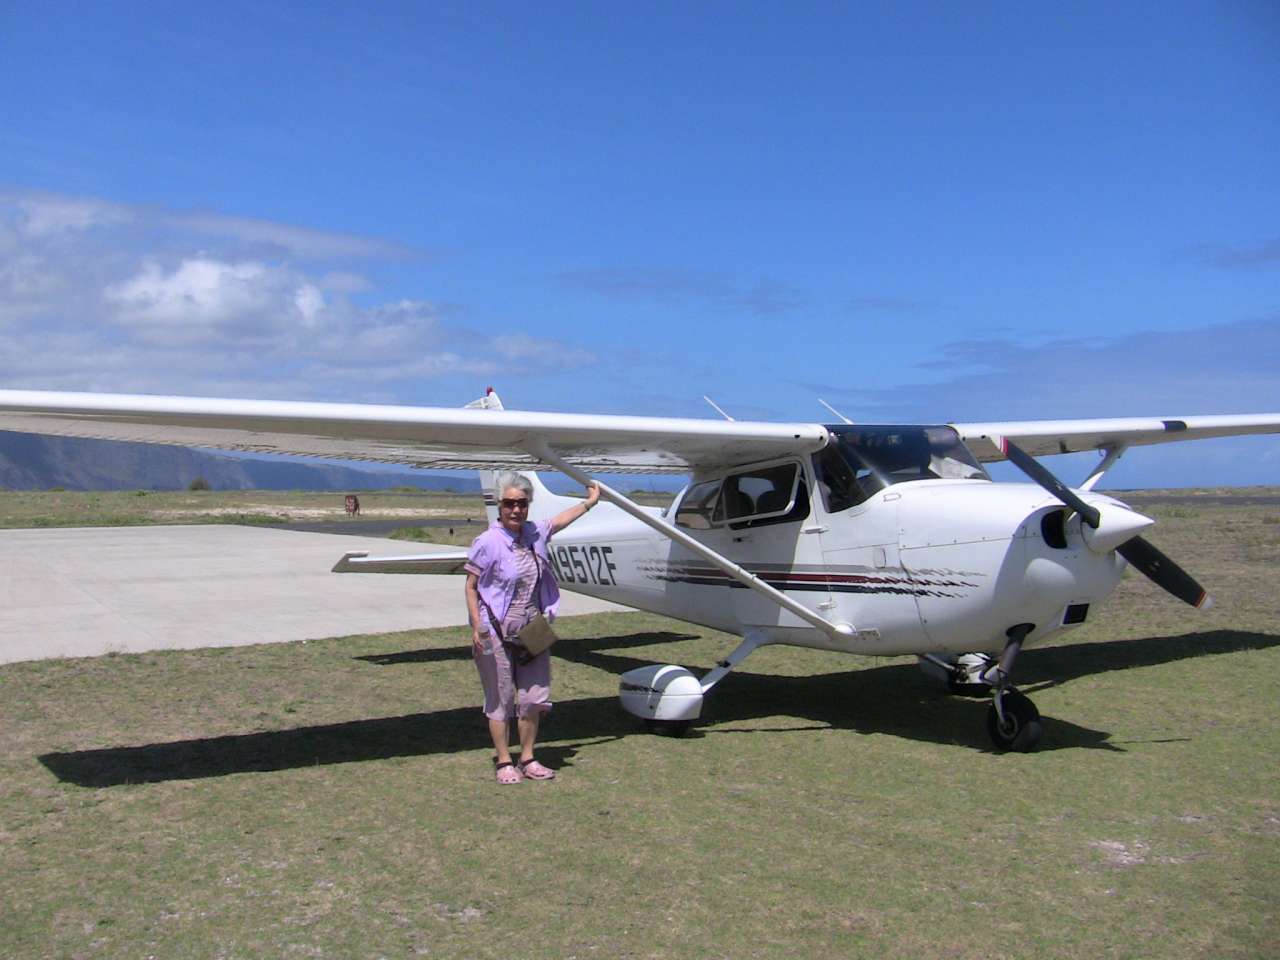 Kalaupapa Airport (PHLU) at Molokai island